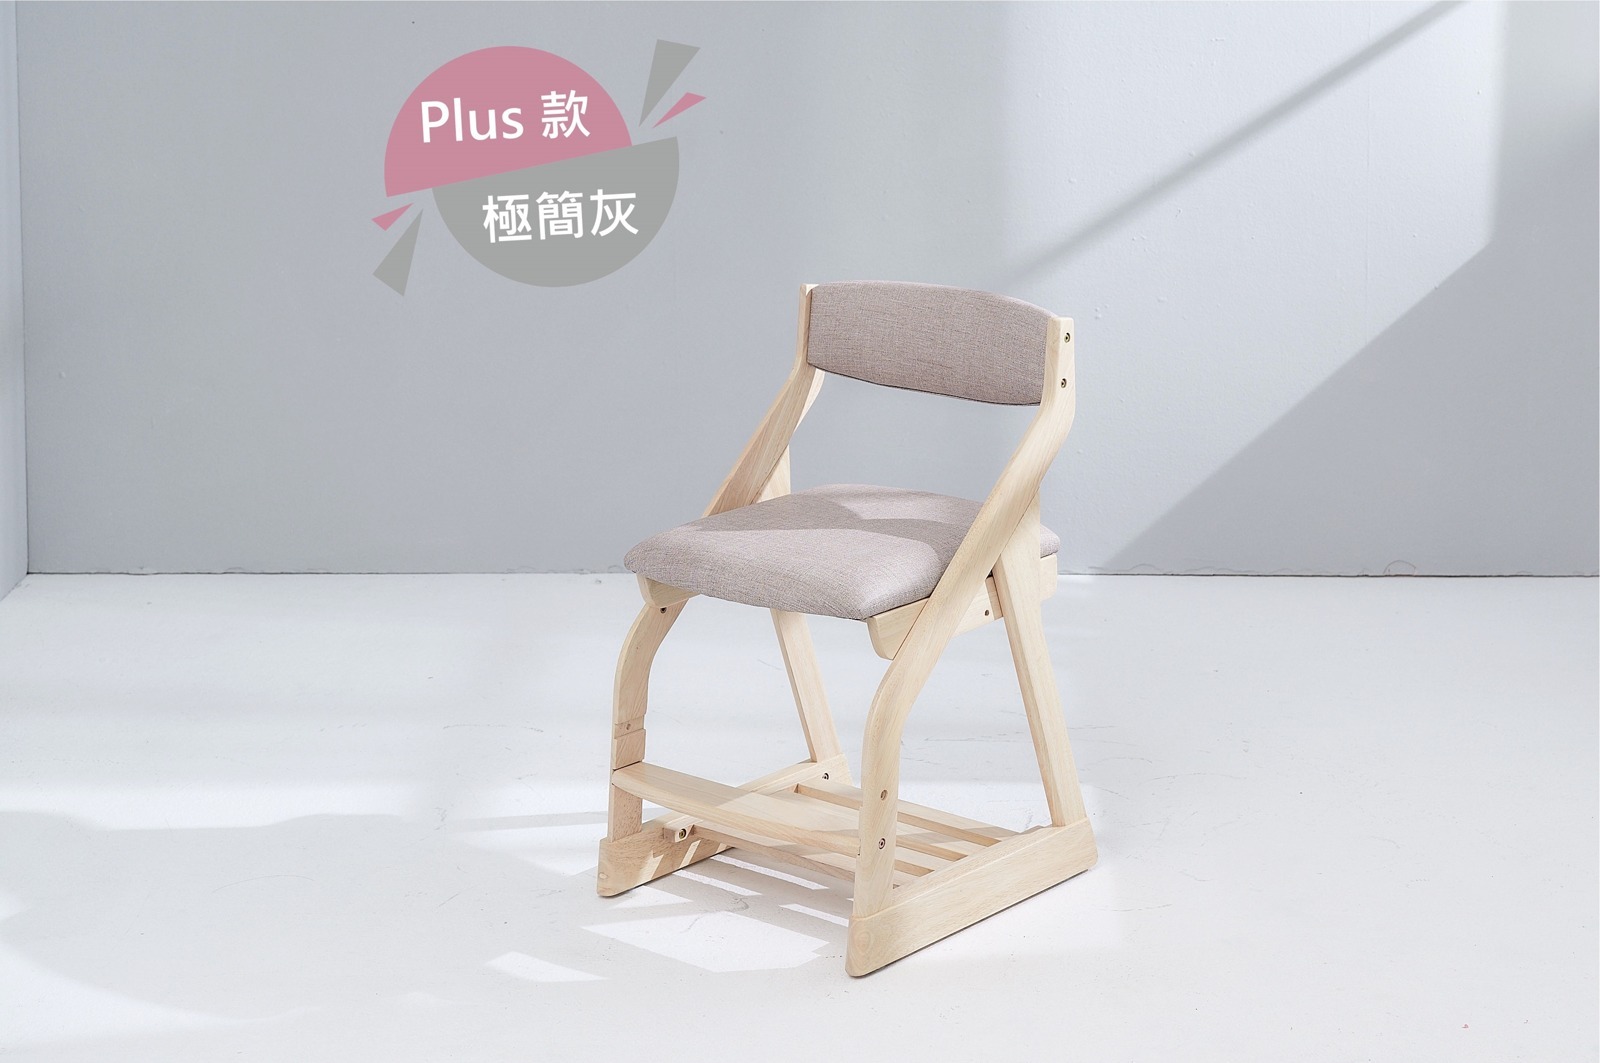 可調式成長椅-Plus款